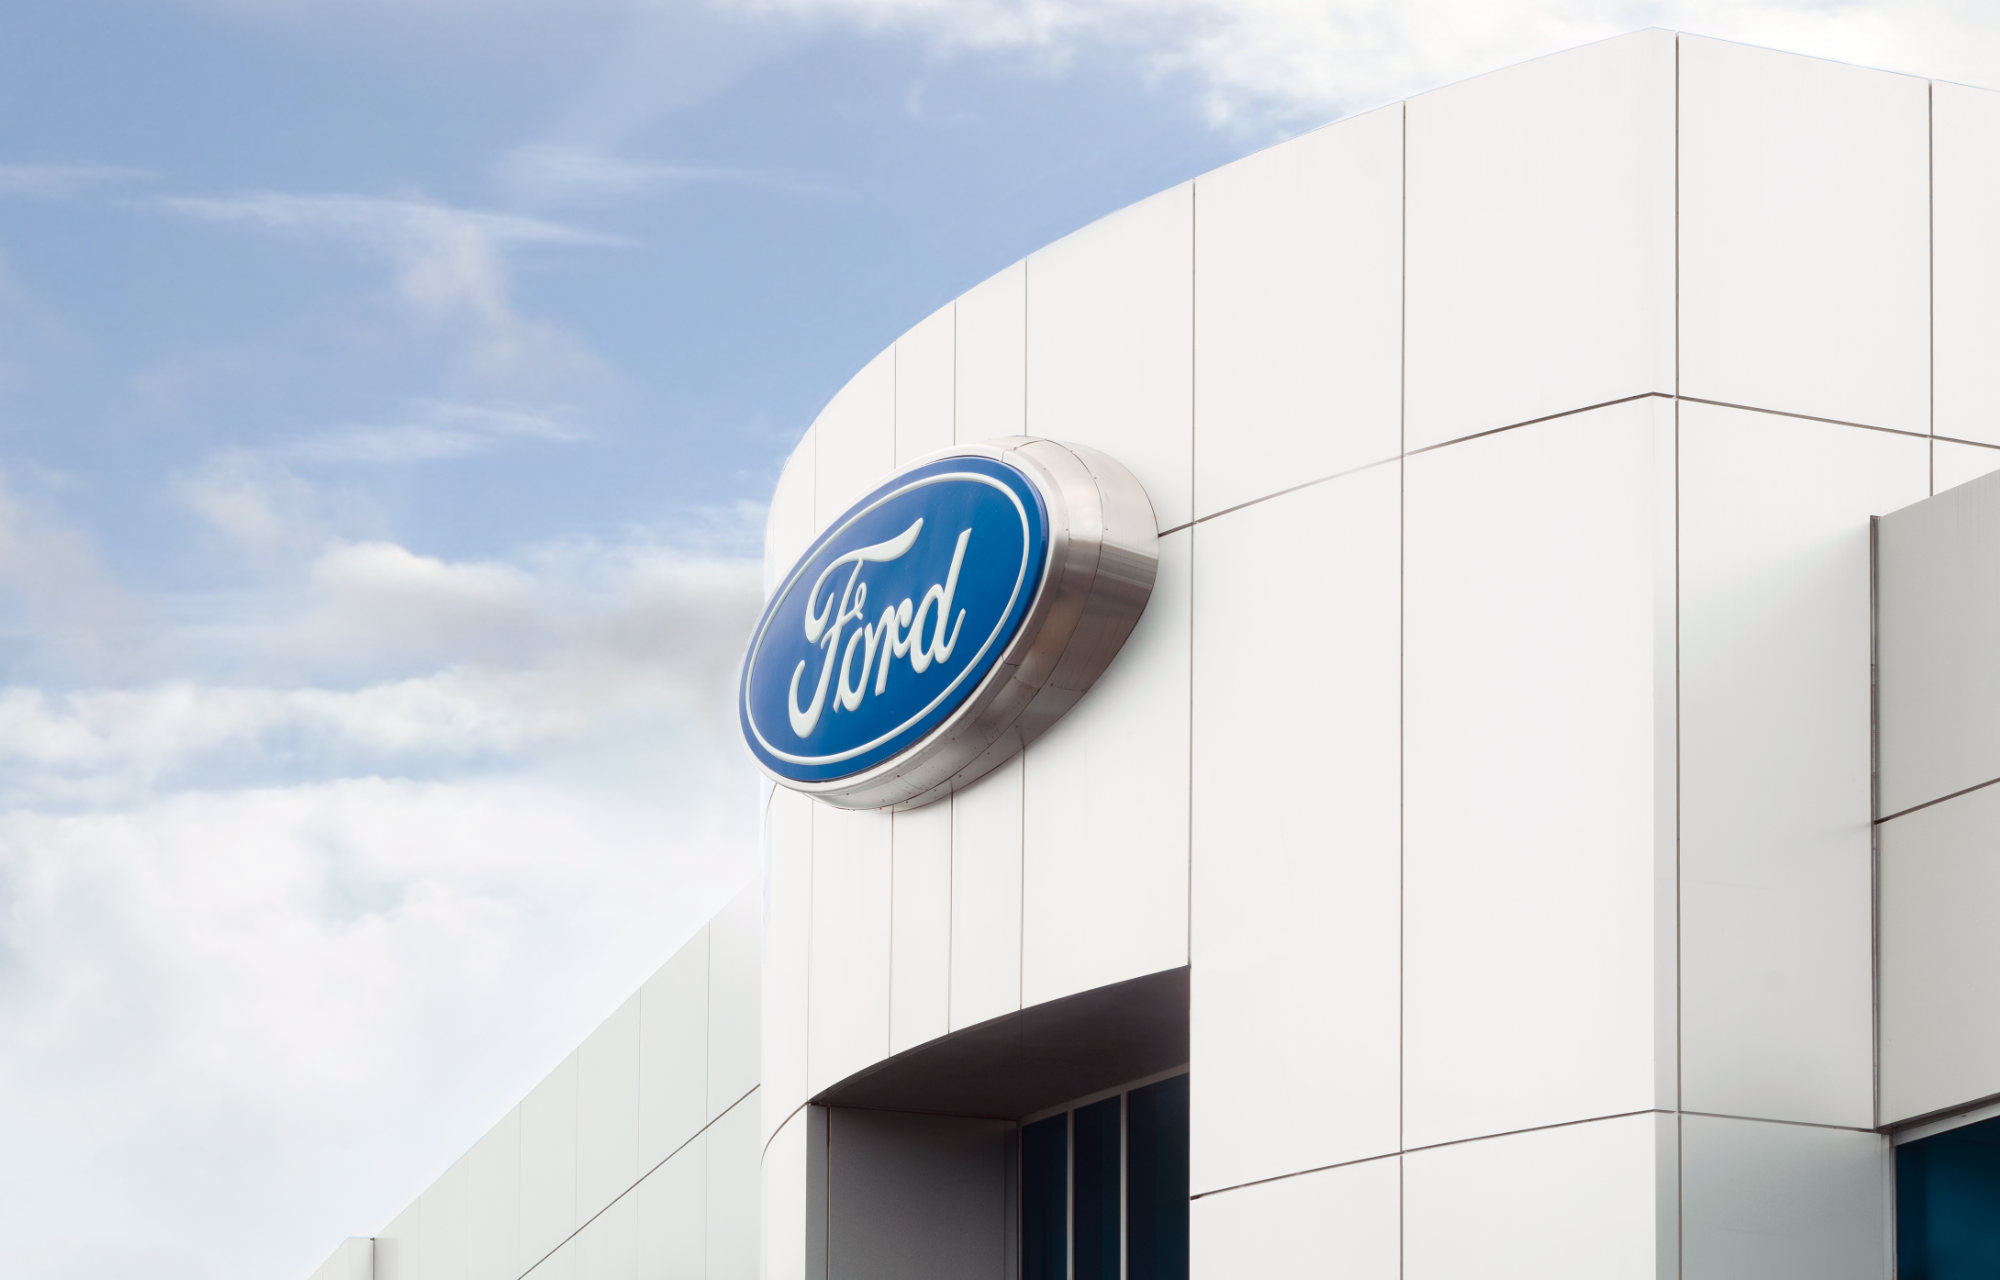 Autorisé à conduire : La liste de contrôle de Ford pour les nouveaux conducteurs et qui sert également de rappel pour ceux de retour sur les routes !